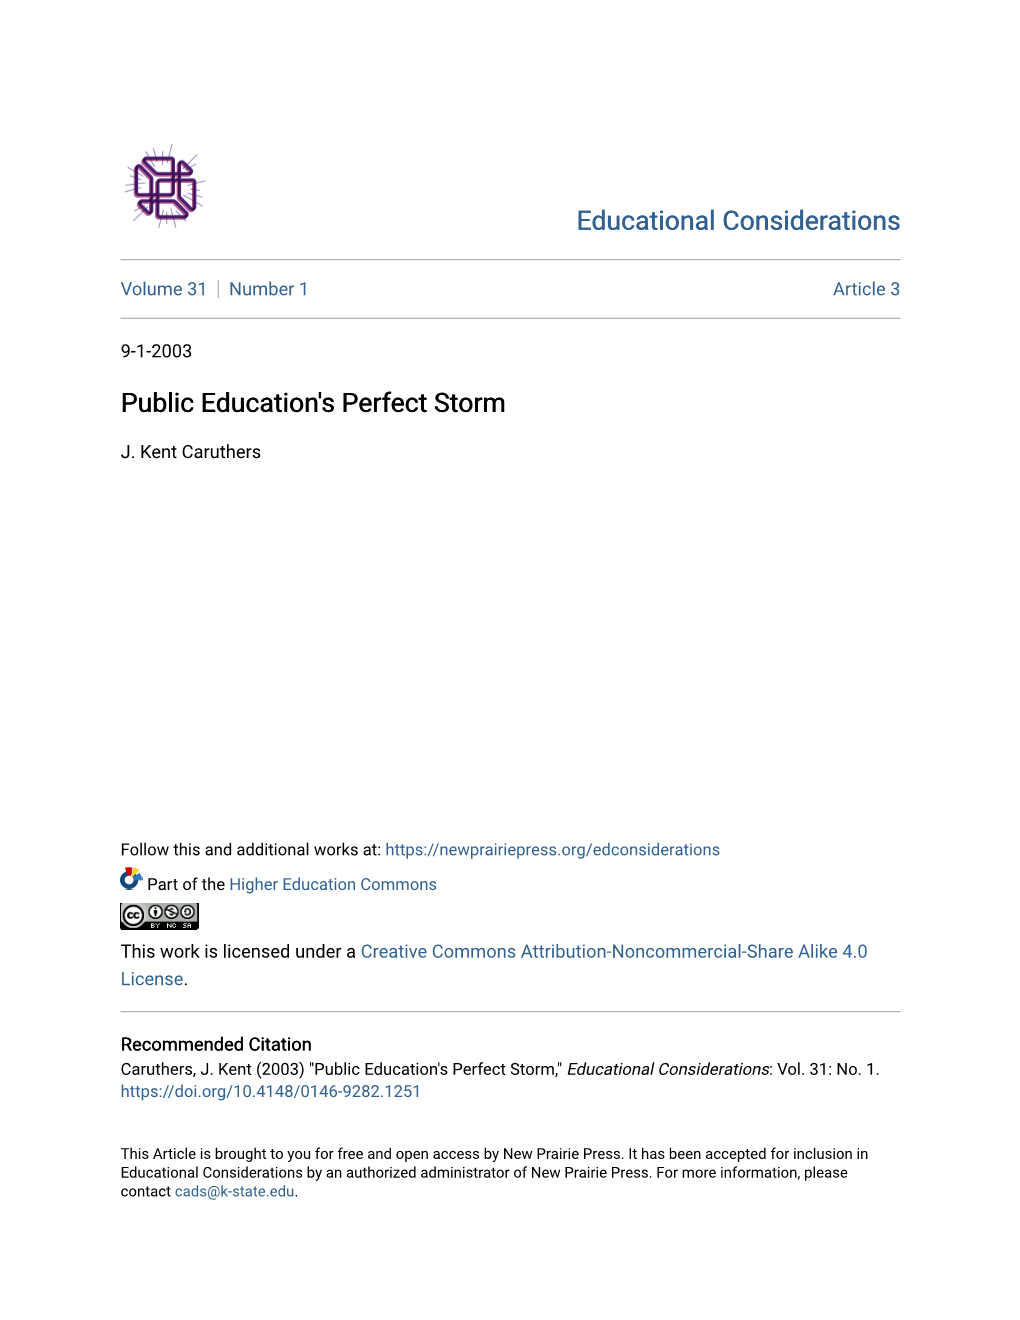 Public Education's Perfect Storm